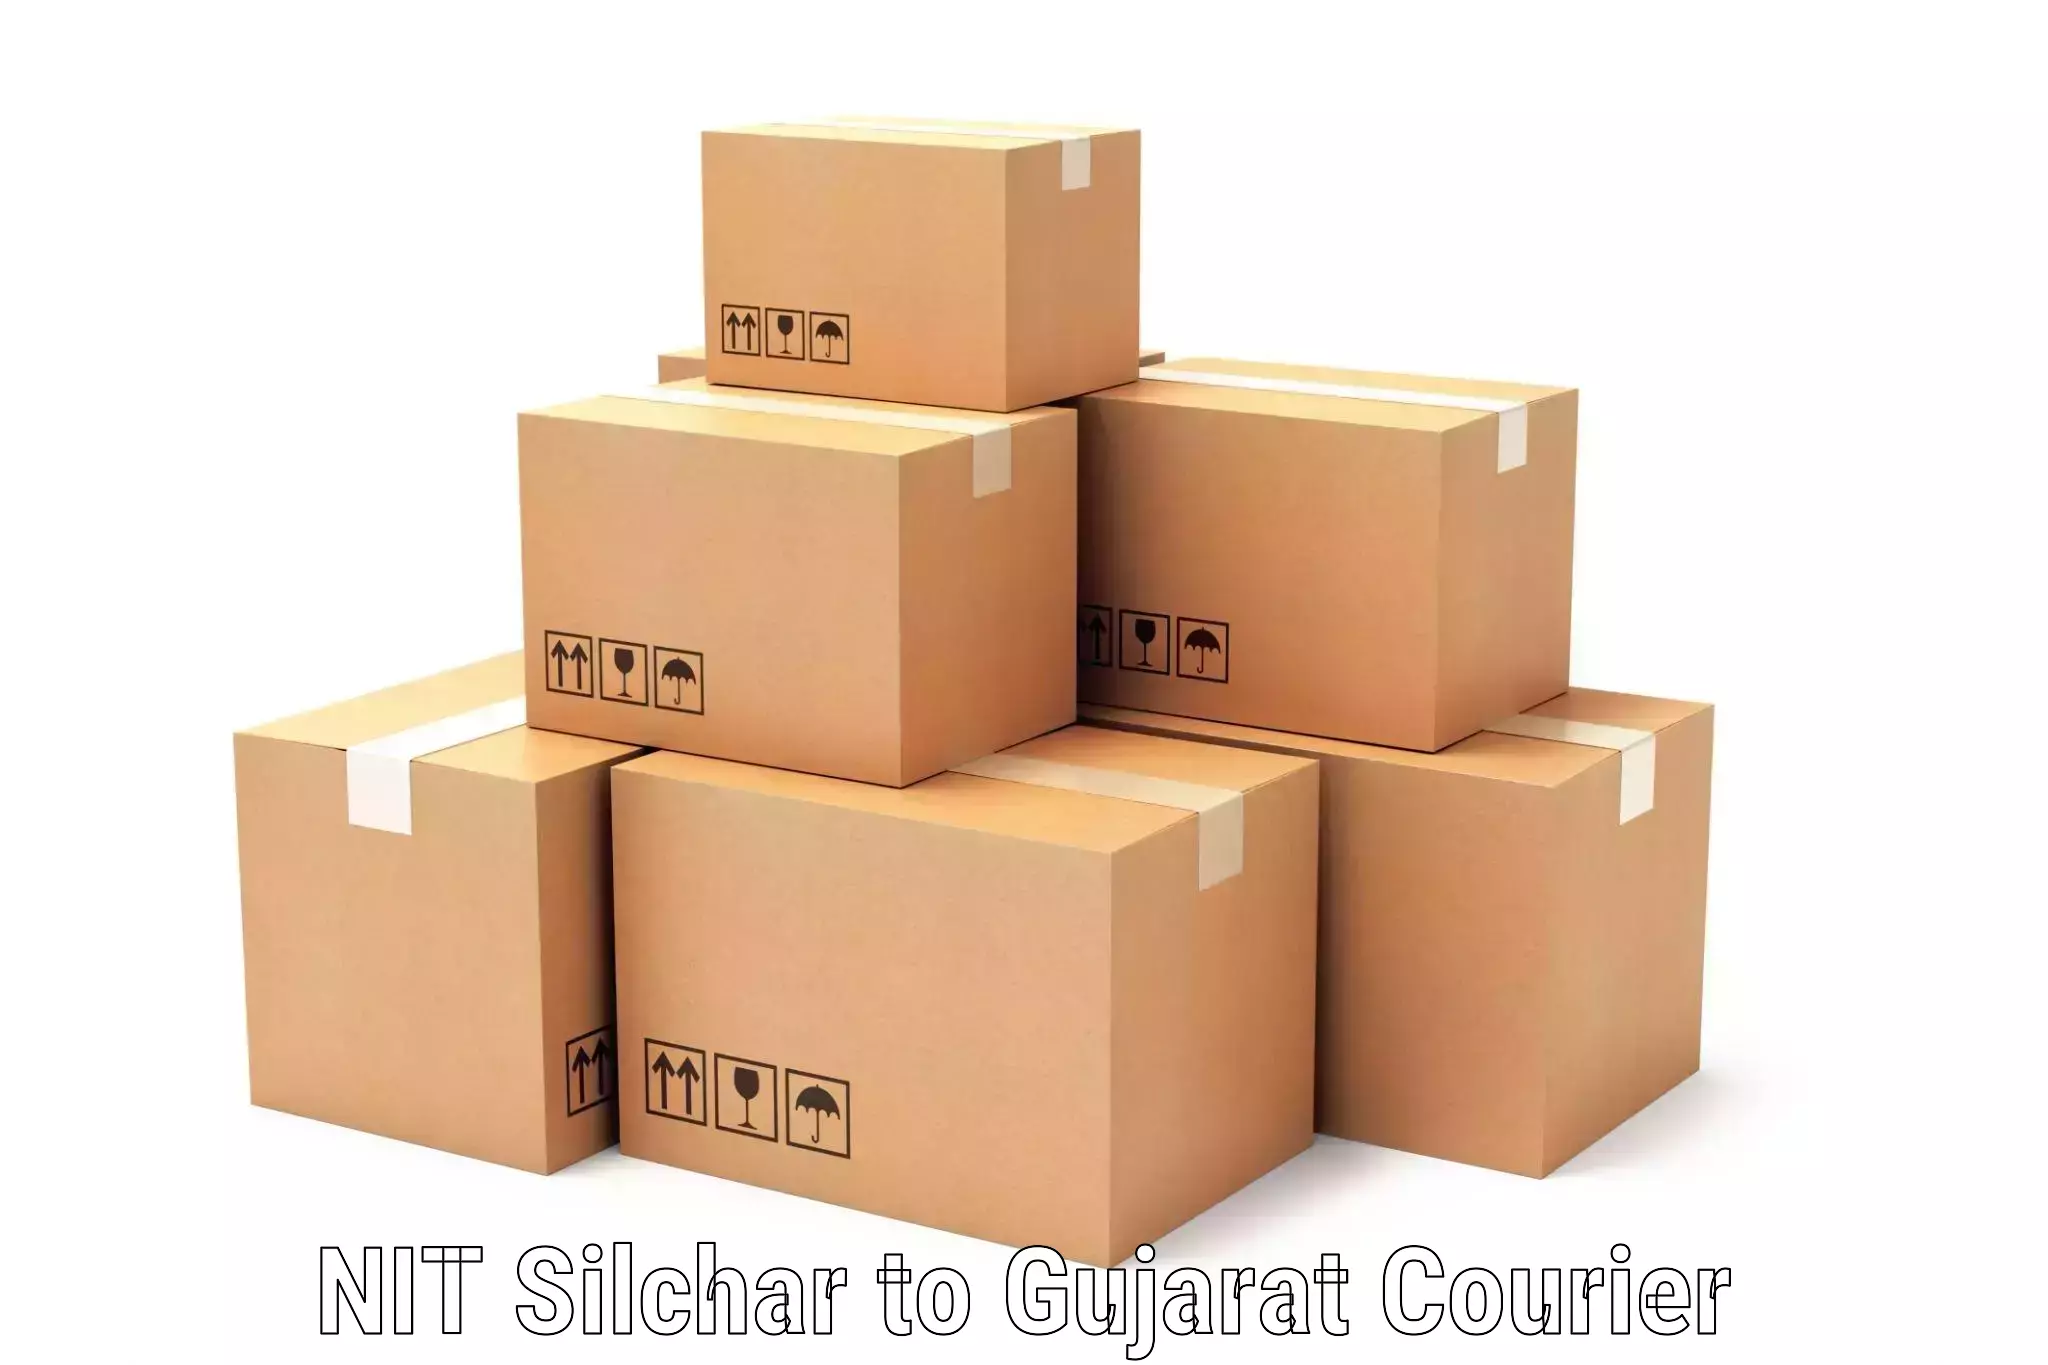 Smart logistics strategies in NIT Silchar to Gujarat